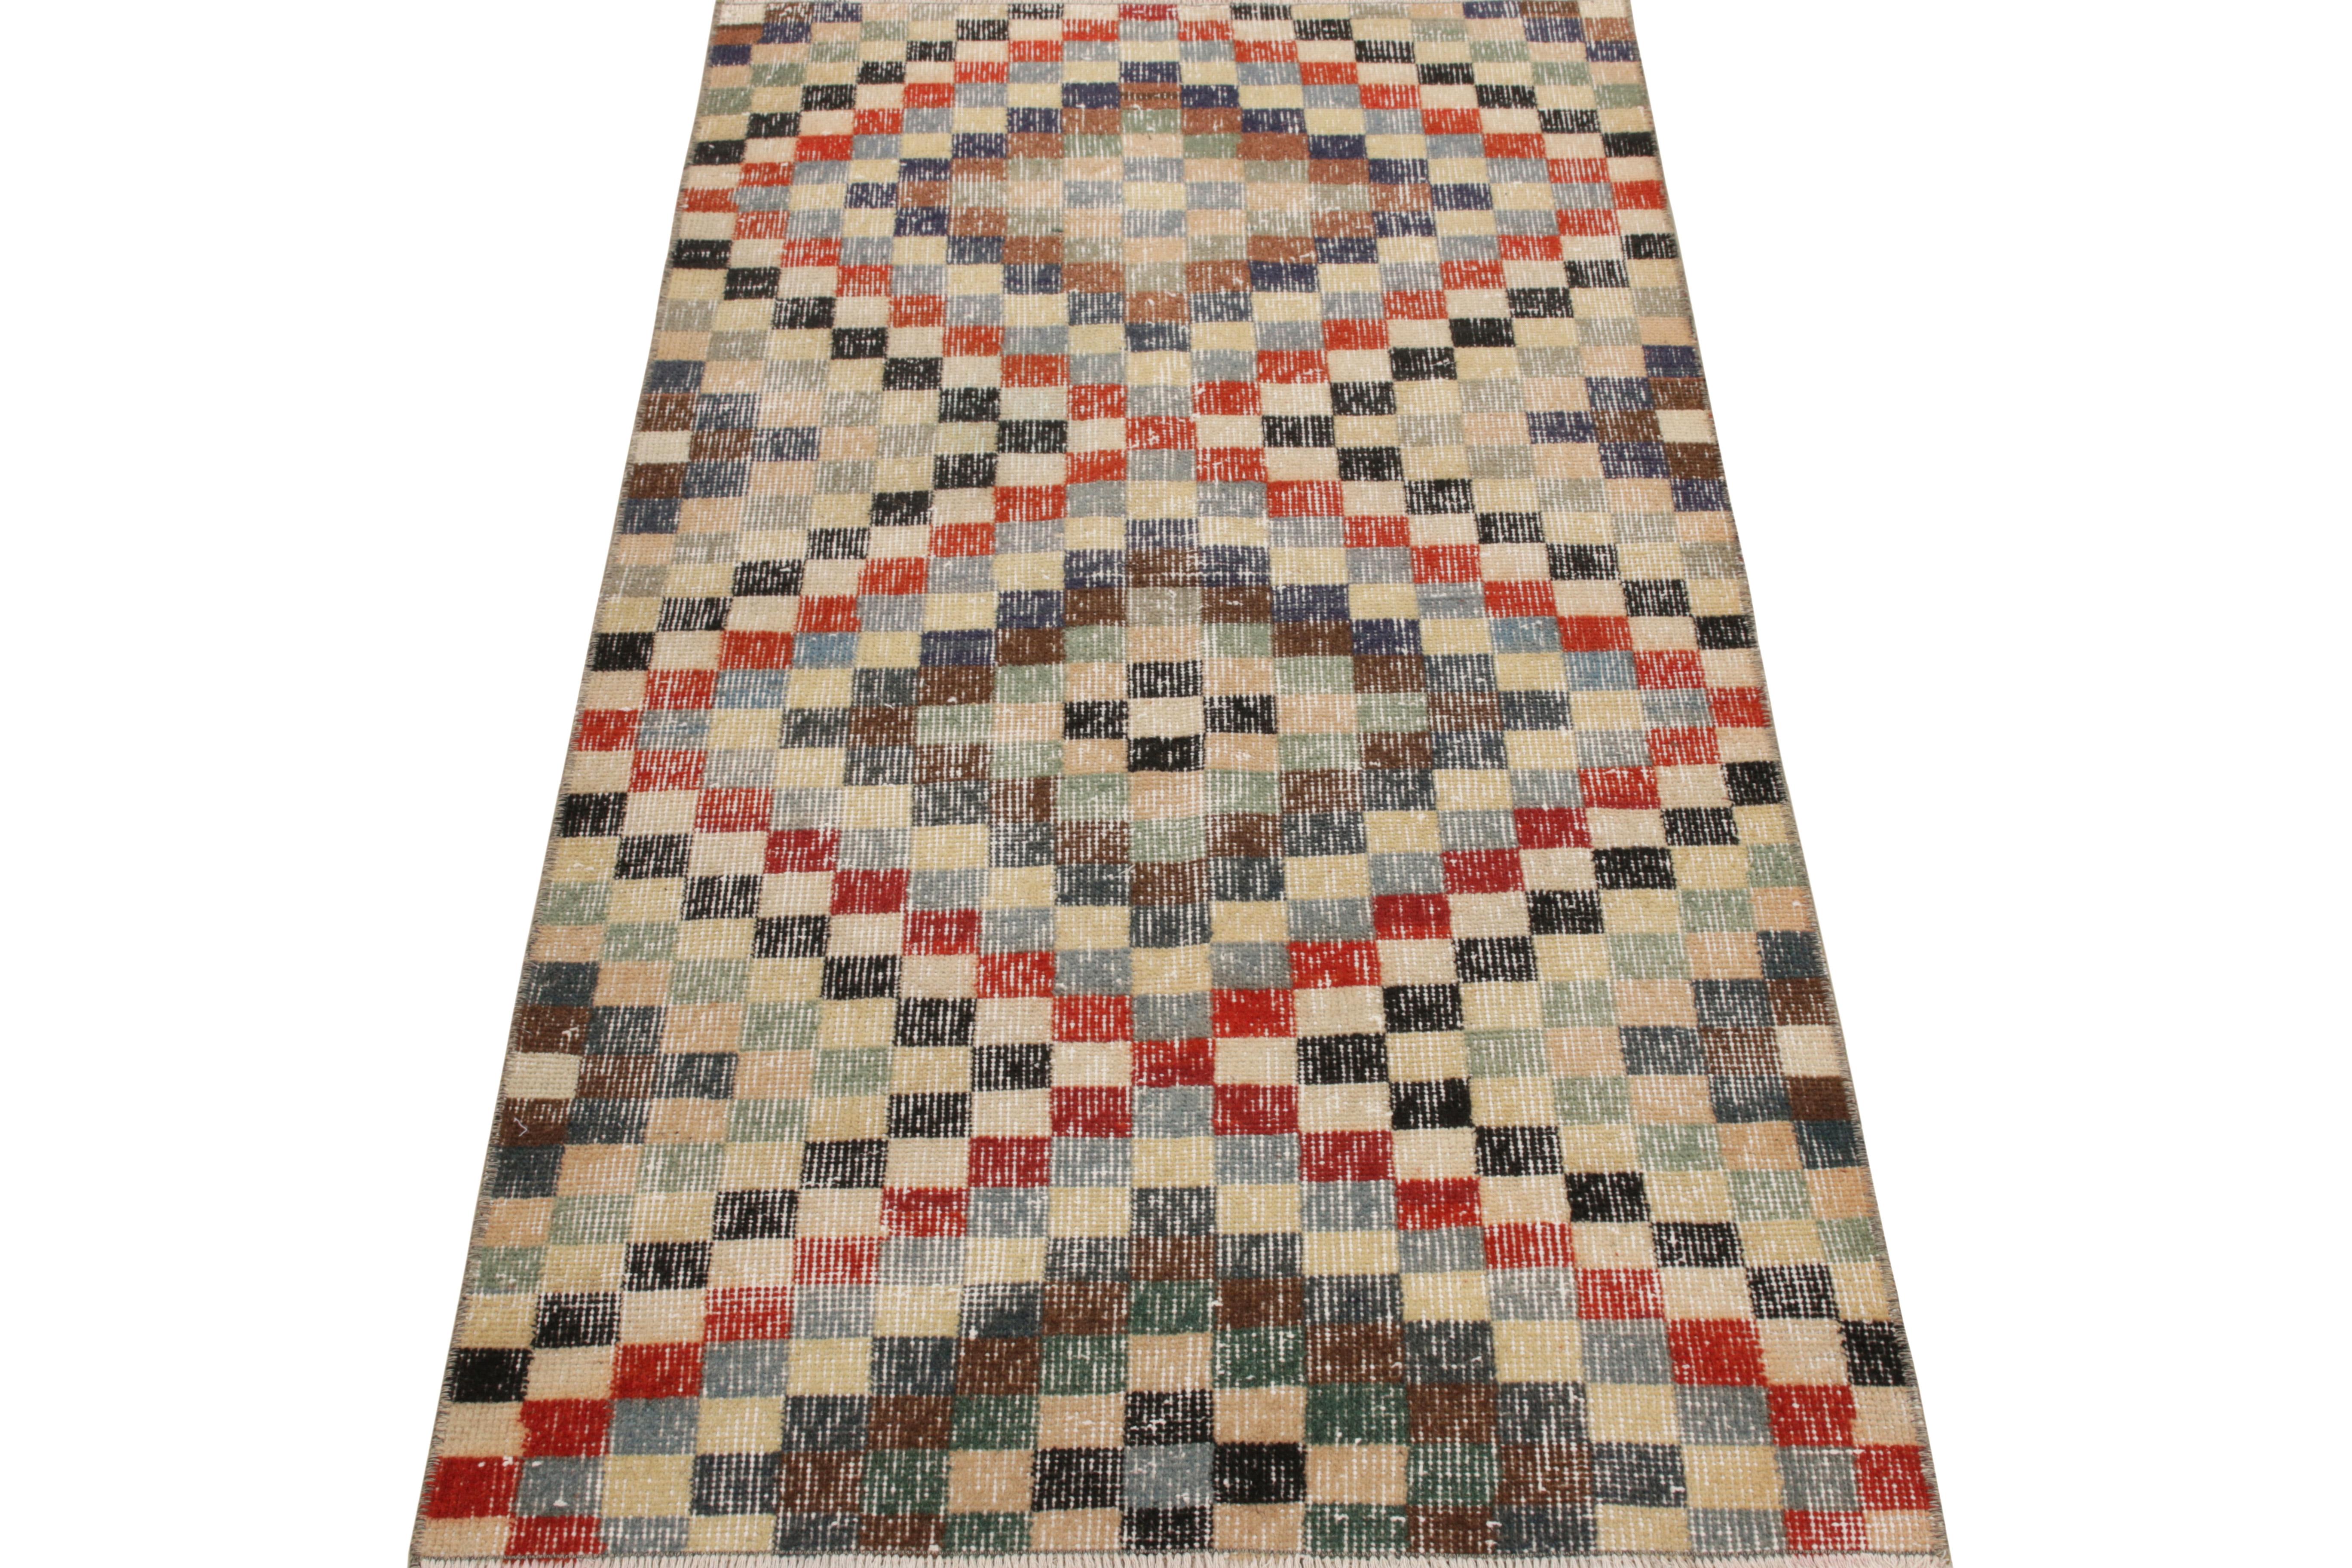 Dieser 3 x 5 große Vintage-Teppich aus den 1960er Jahren stammt von einem angesehenen türkischen Designer und gehört jetzt zu unserer Mid Century Pasha-Kollektion. Die shabby chic Zeichnung erfreut sich eines anmutigen mehrfarbigen geometrischen